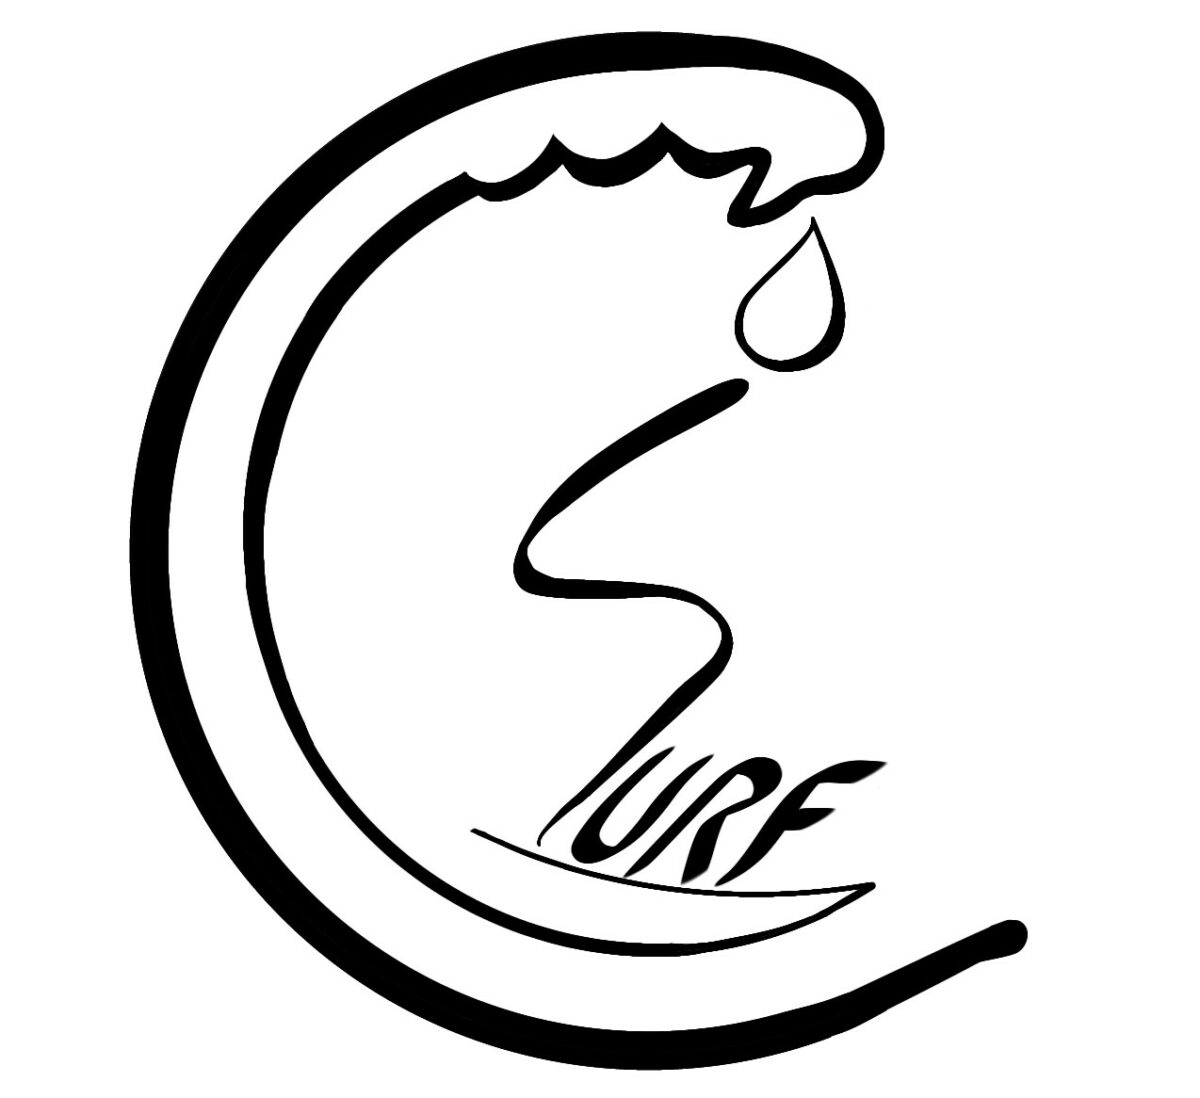 logo-csurf1-1200x1098.jpg